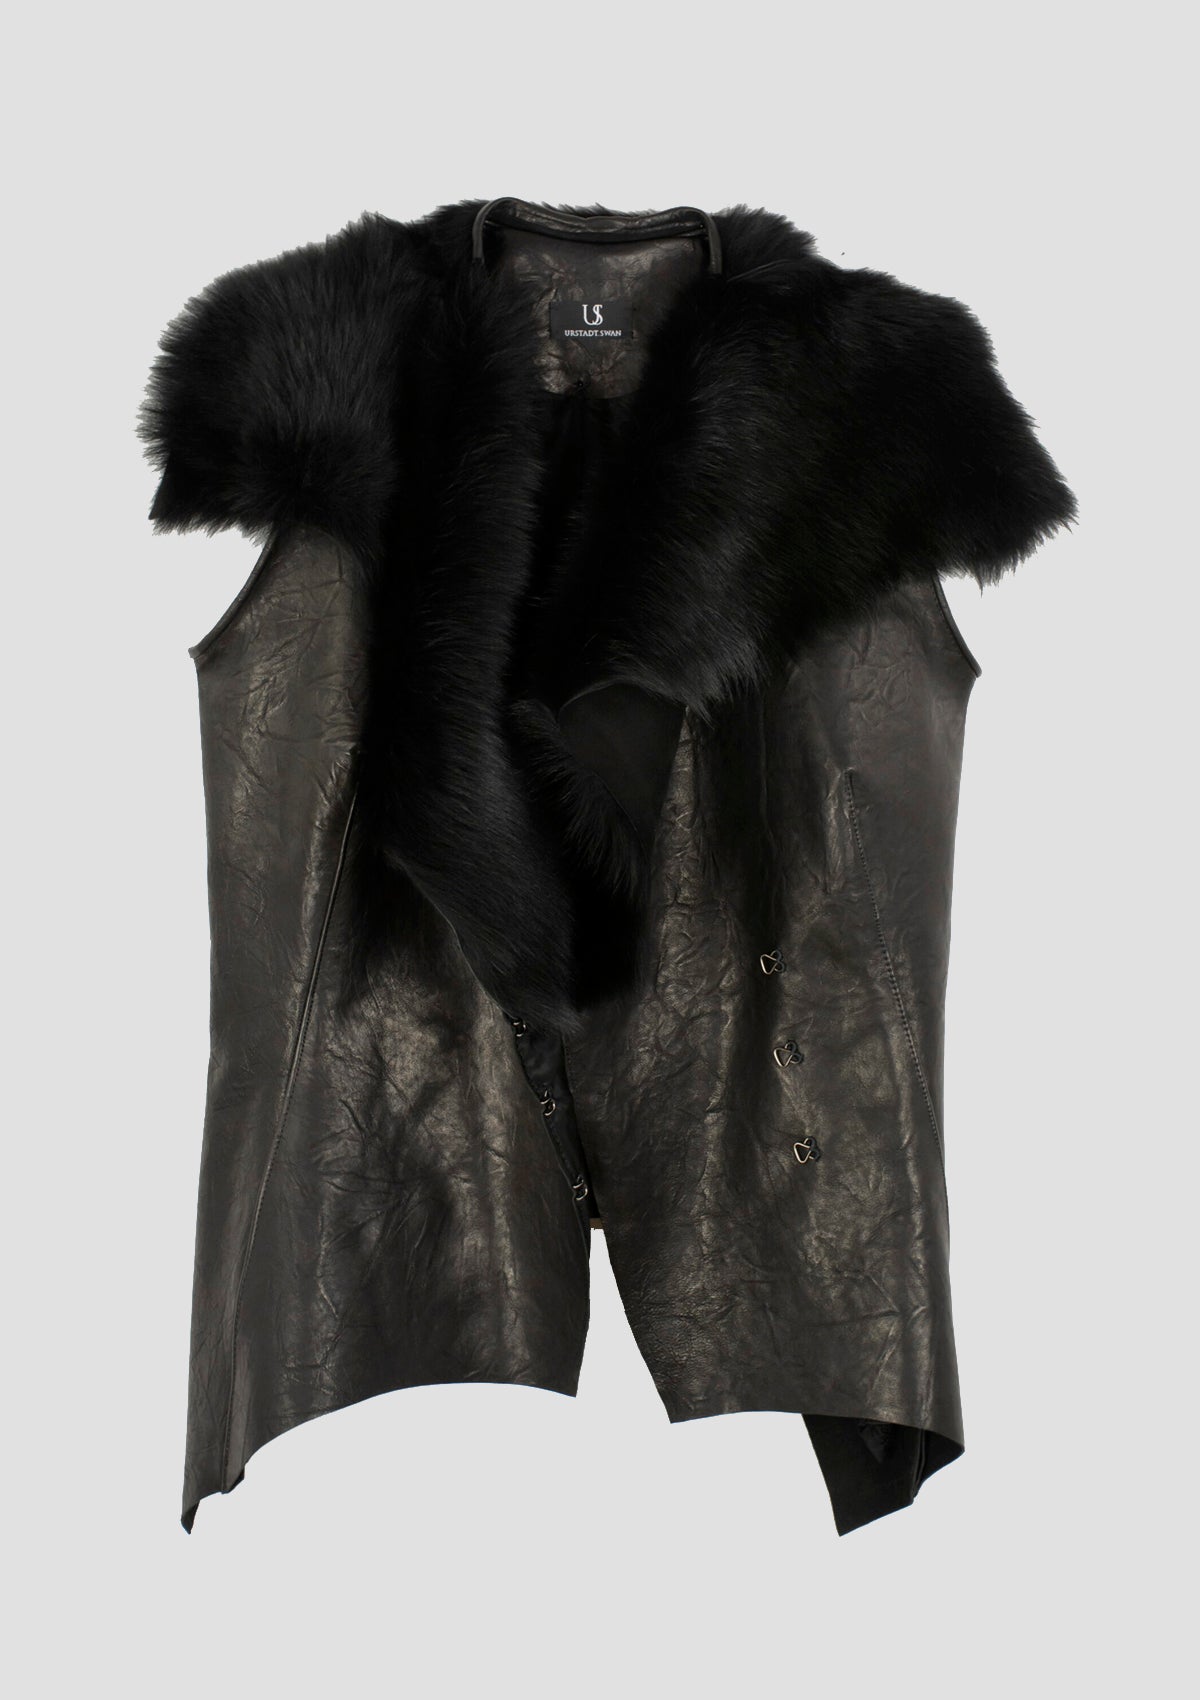 Louvre Fur faux Leather Vest black